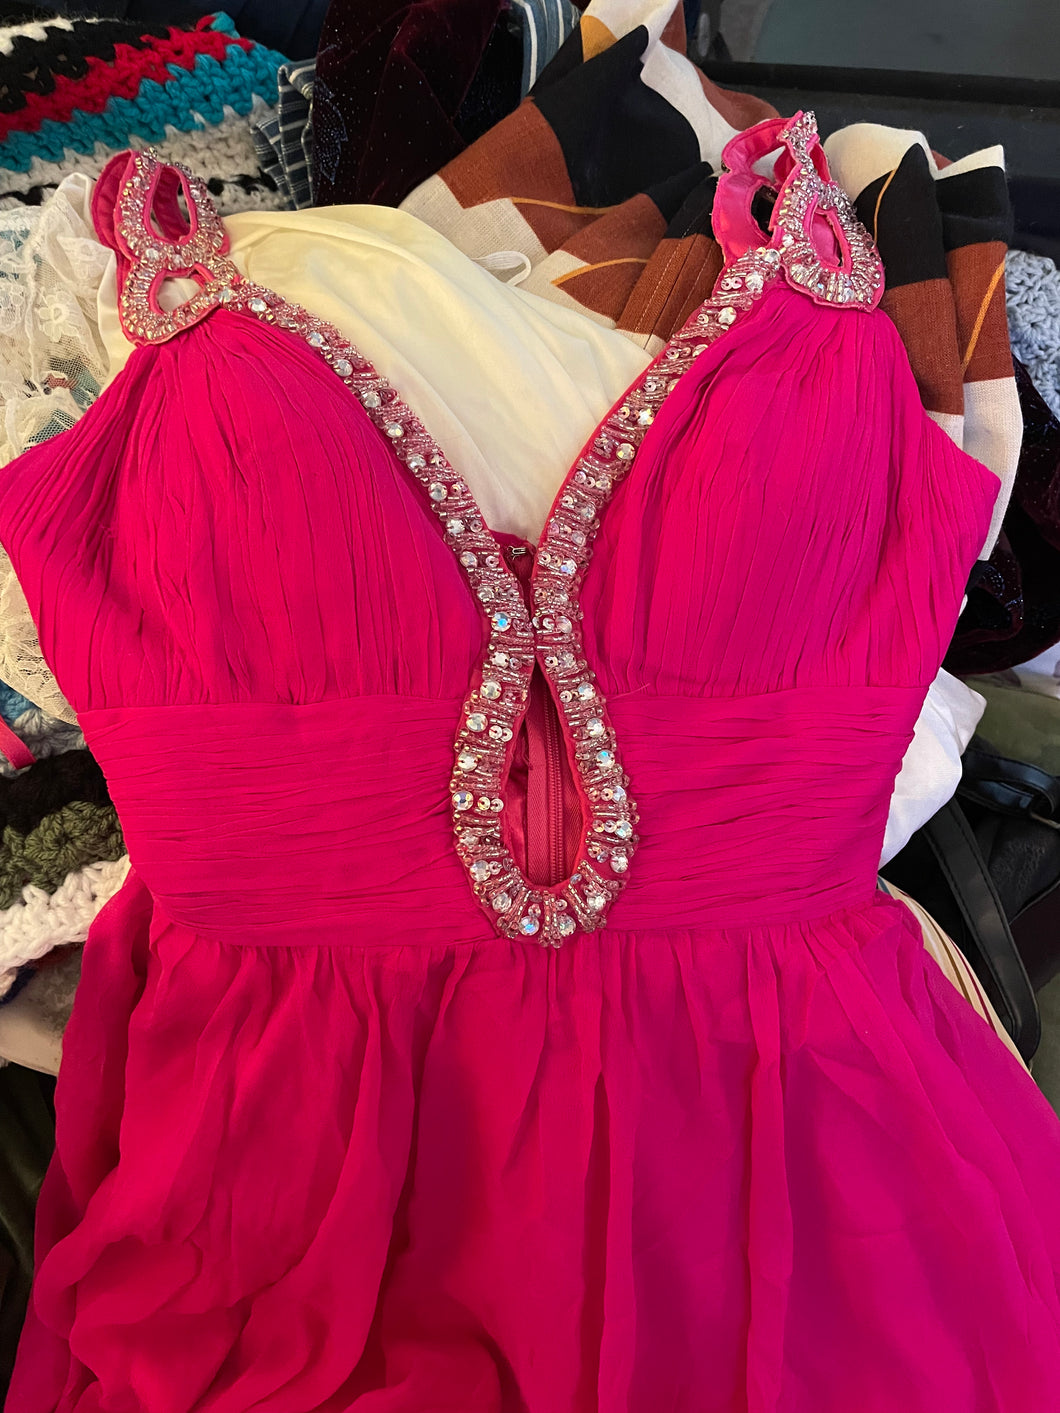 It’s a JOVANI Hot Pink Mini Dress